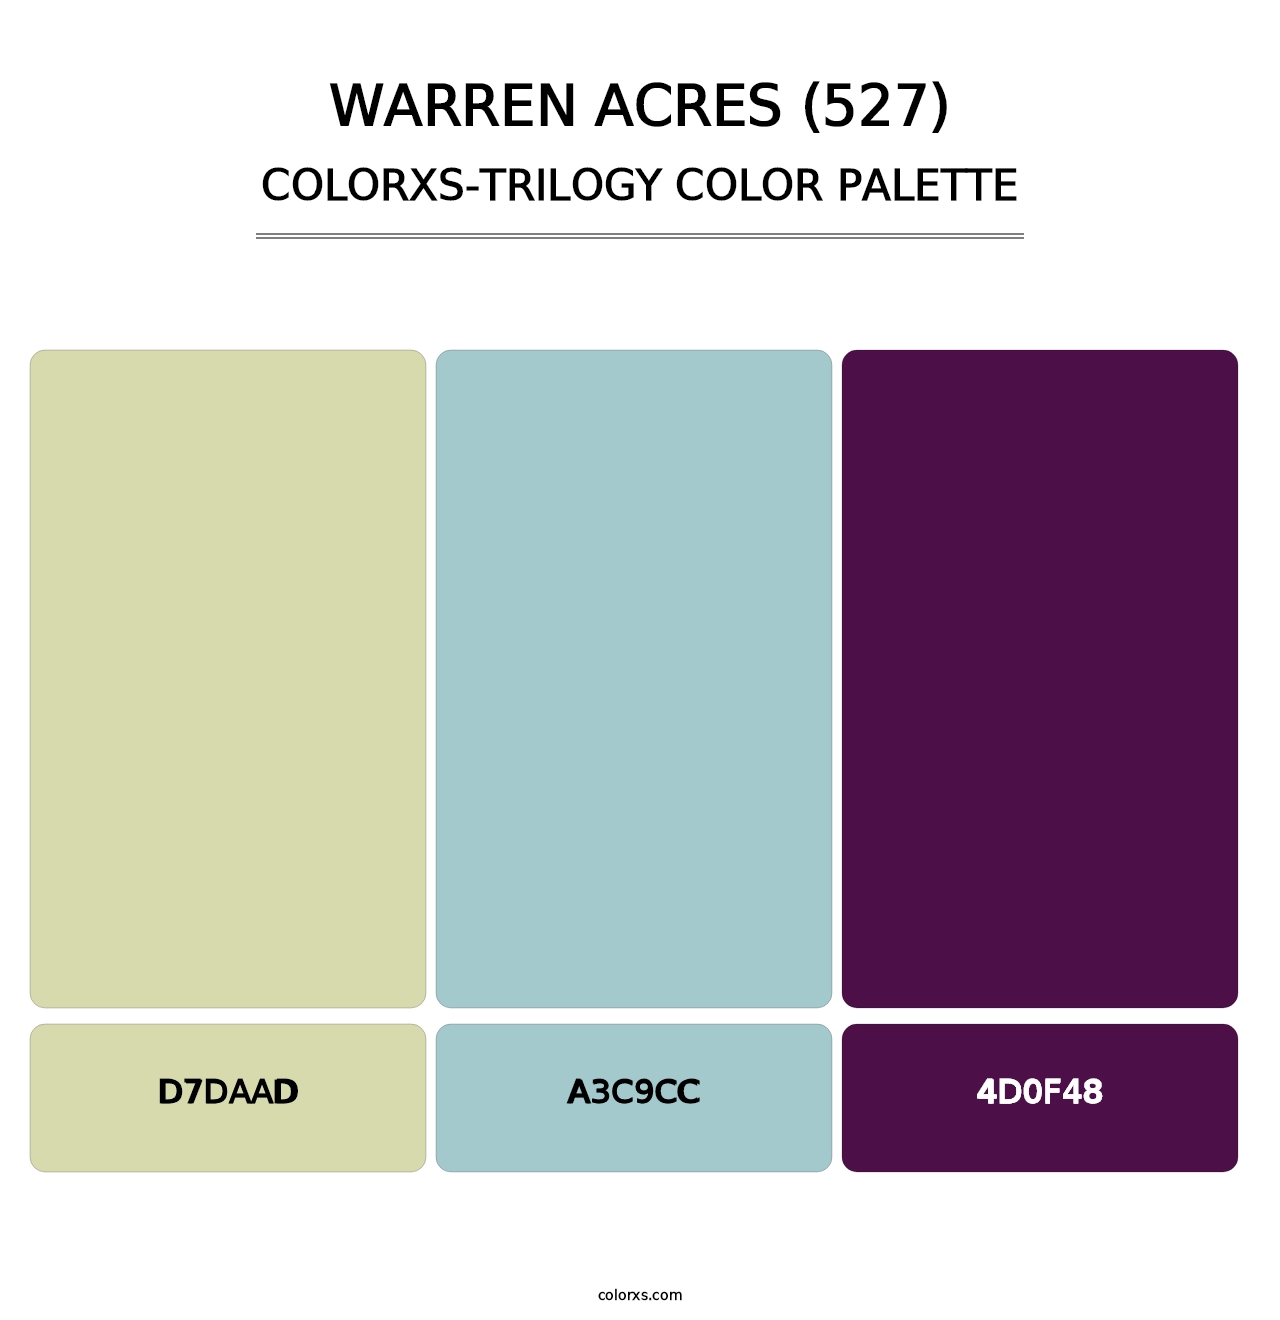 Warren Acres (527) - Colorxs Trilogy Palette